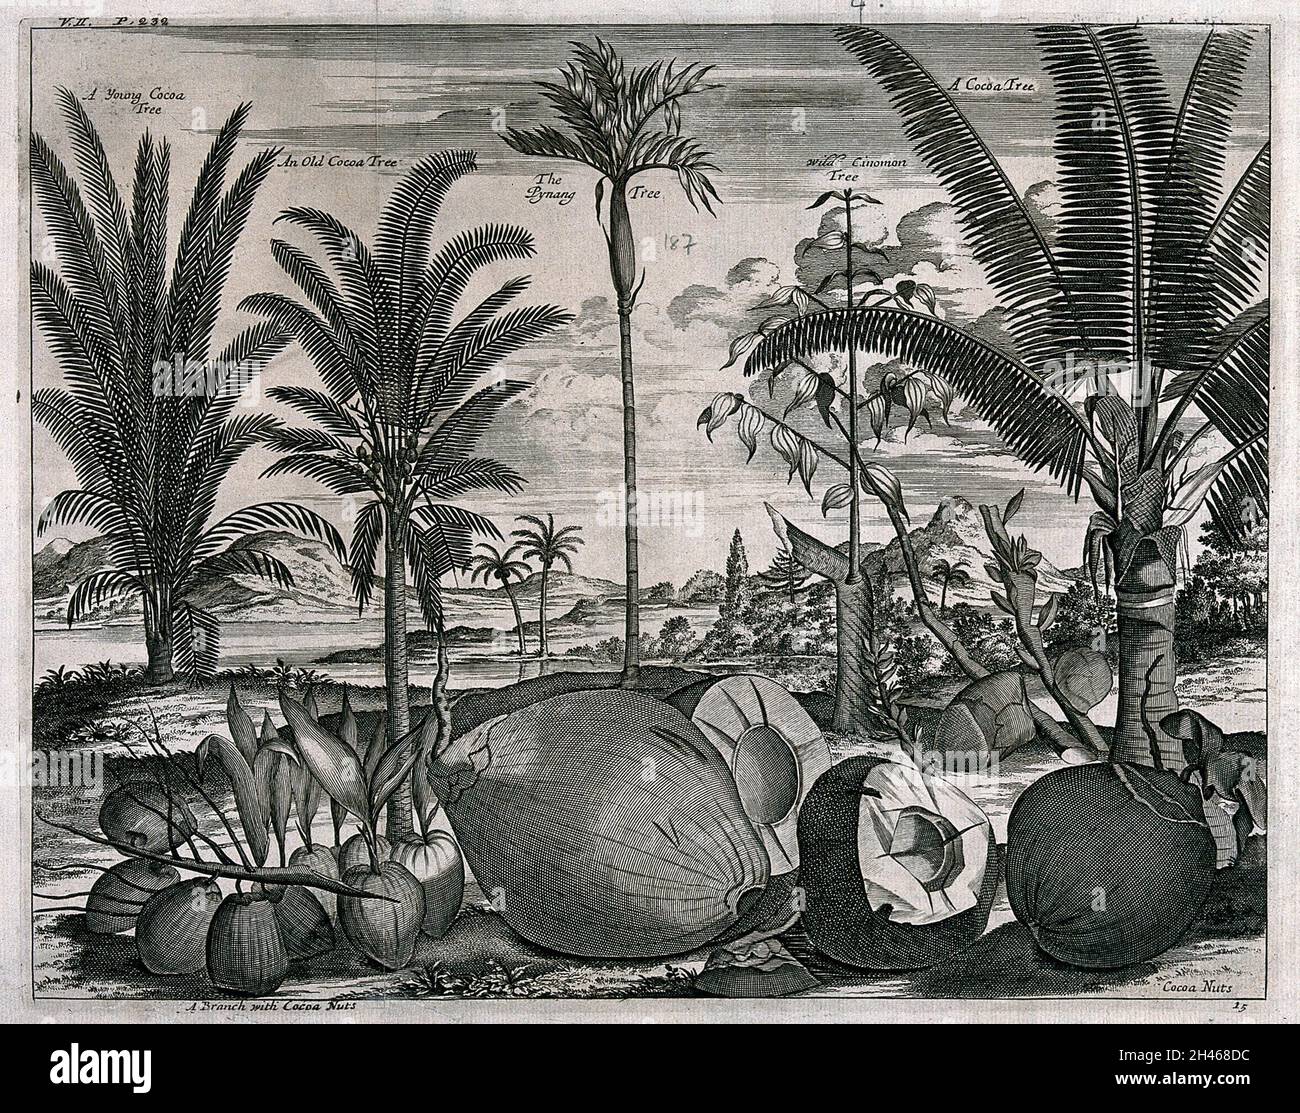 Noix de coco et arbres (Cocos nucifera), un arbre de cannelle (Cinnamomum verum) et un arbre de pinang (Areca catechu), dans un paysage tropical.Gravure de ligne après J. Nieuhoff. Banque D'Images